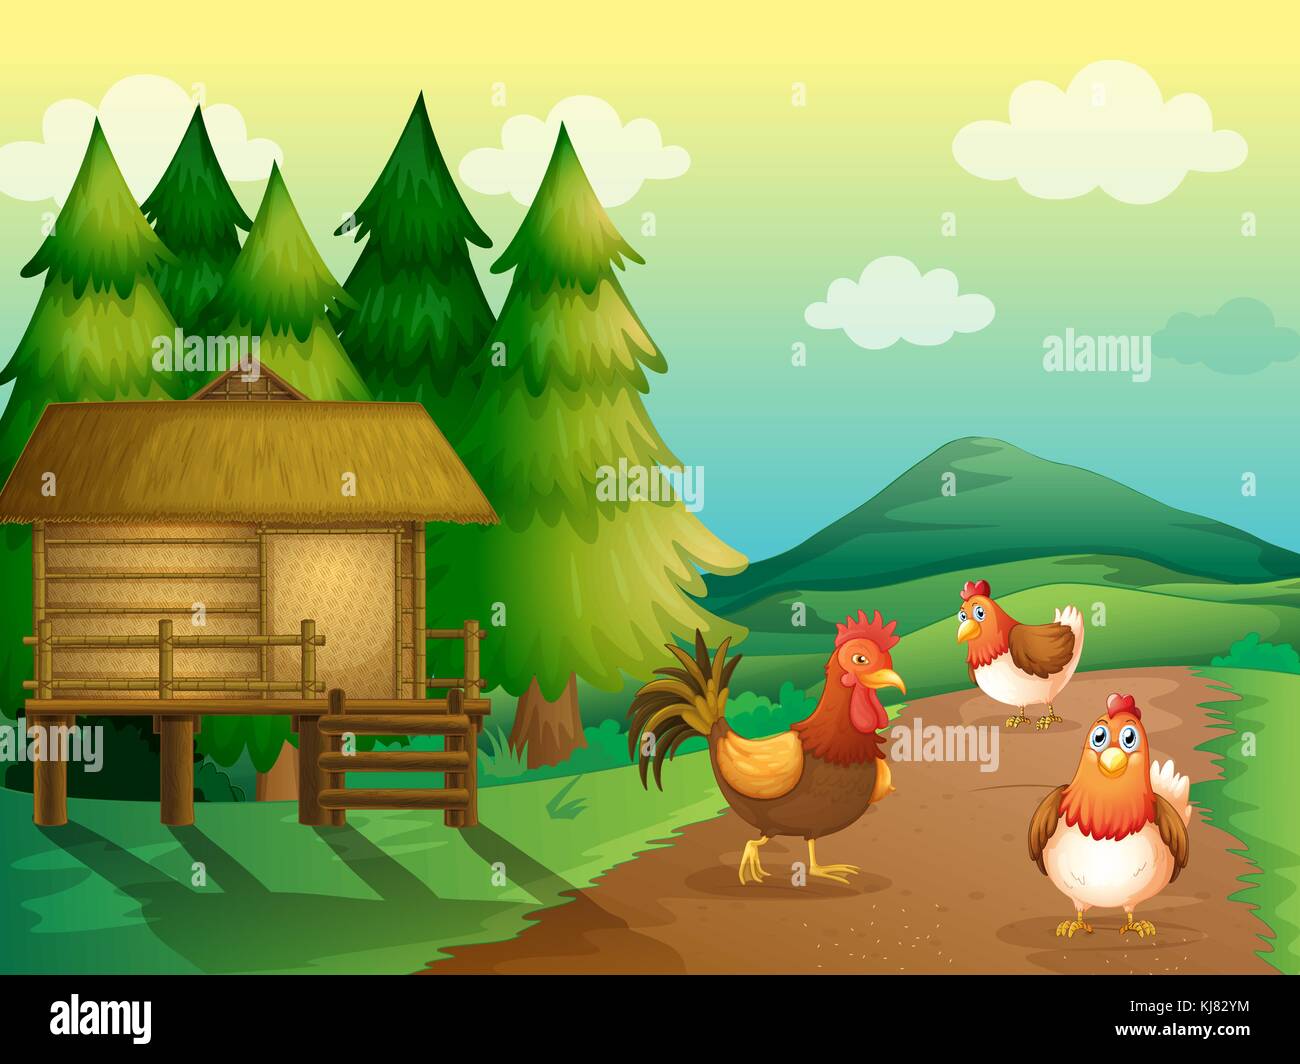 Ilustración de una granja de pollos y una casa nativa Ilustración del Vector